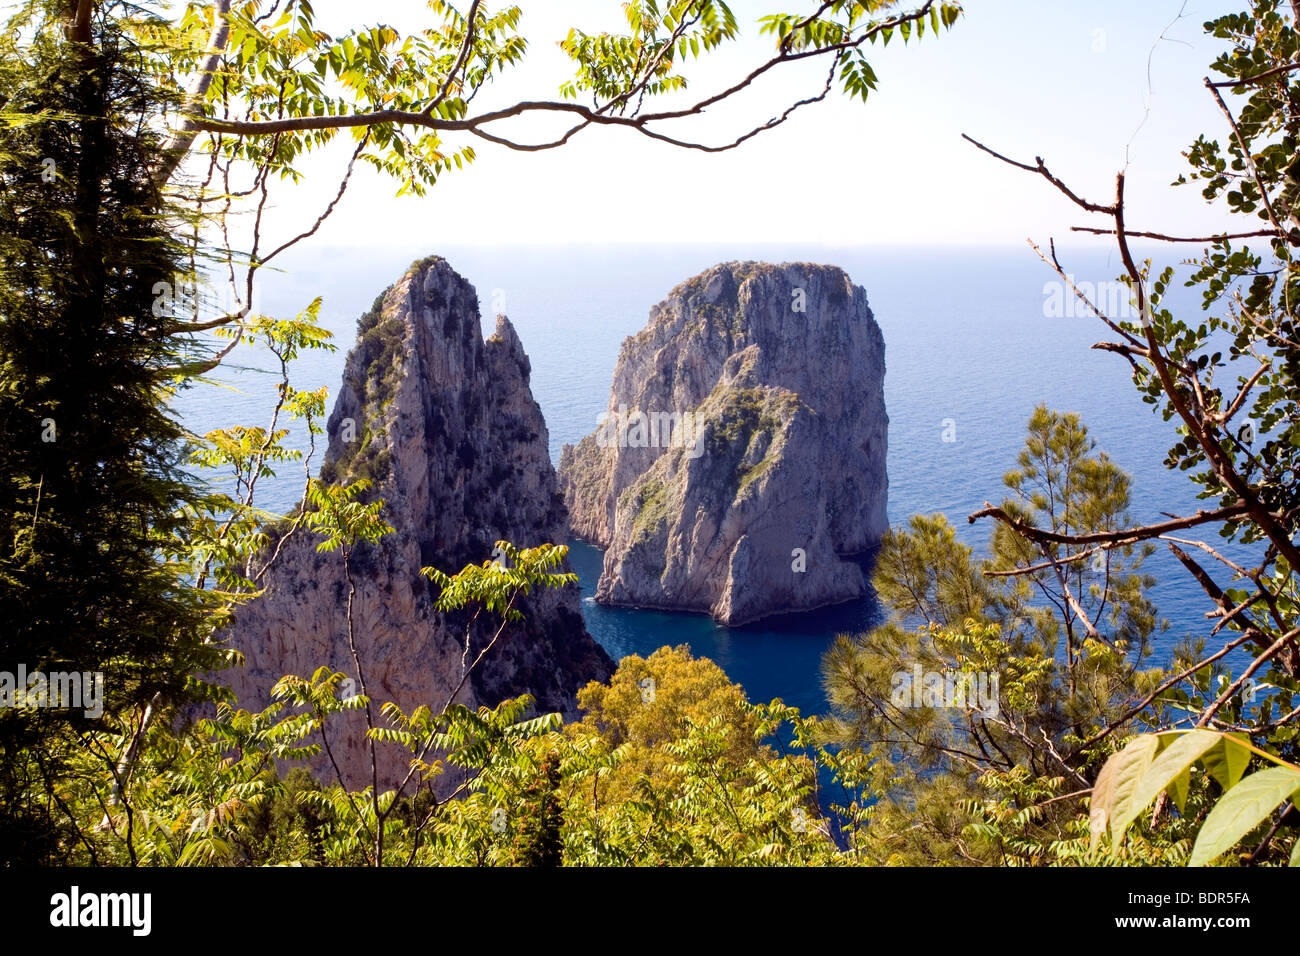 Les célèbres Faraglioni twin Rocks entouré par l'eau et pris d'une falaise au-dessus, une vue sur l'île de Capri, Italie Banque D'Images